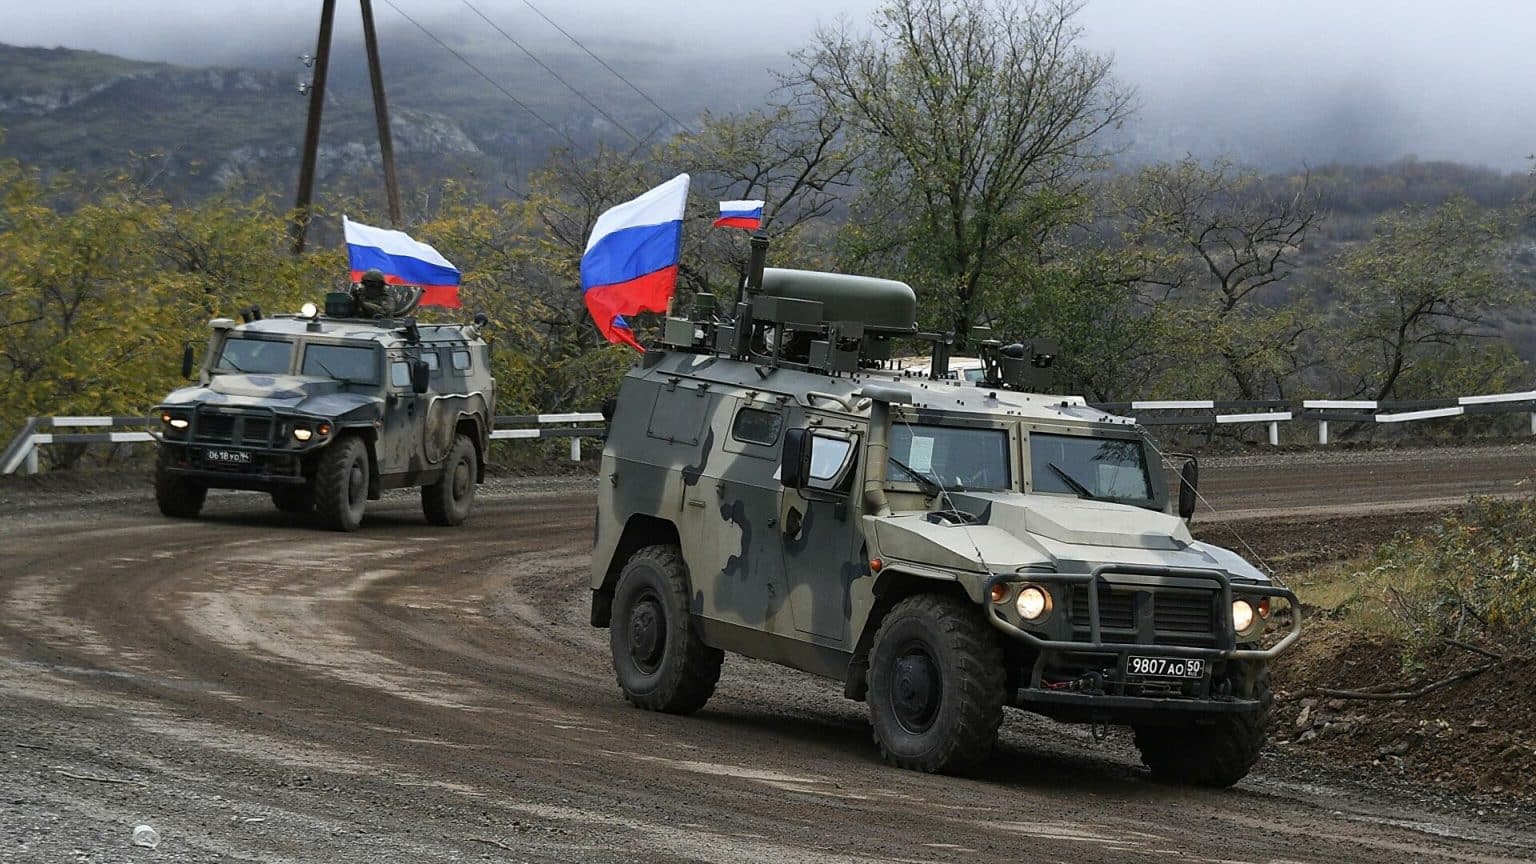 Ռուս խաղաղապահների մնալն Արցախում նախատեսված է մինչև 2025 թվականի նոյեմբերը. Բայրամով